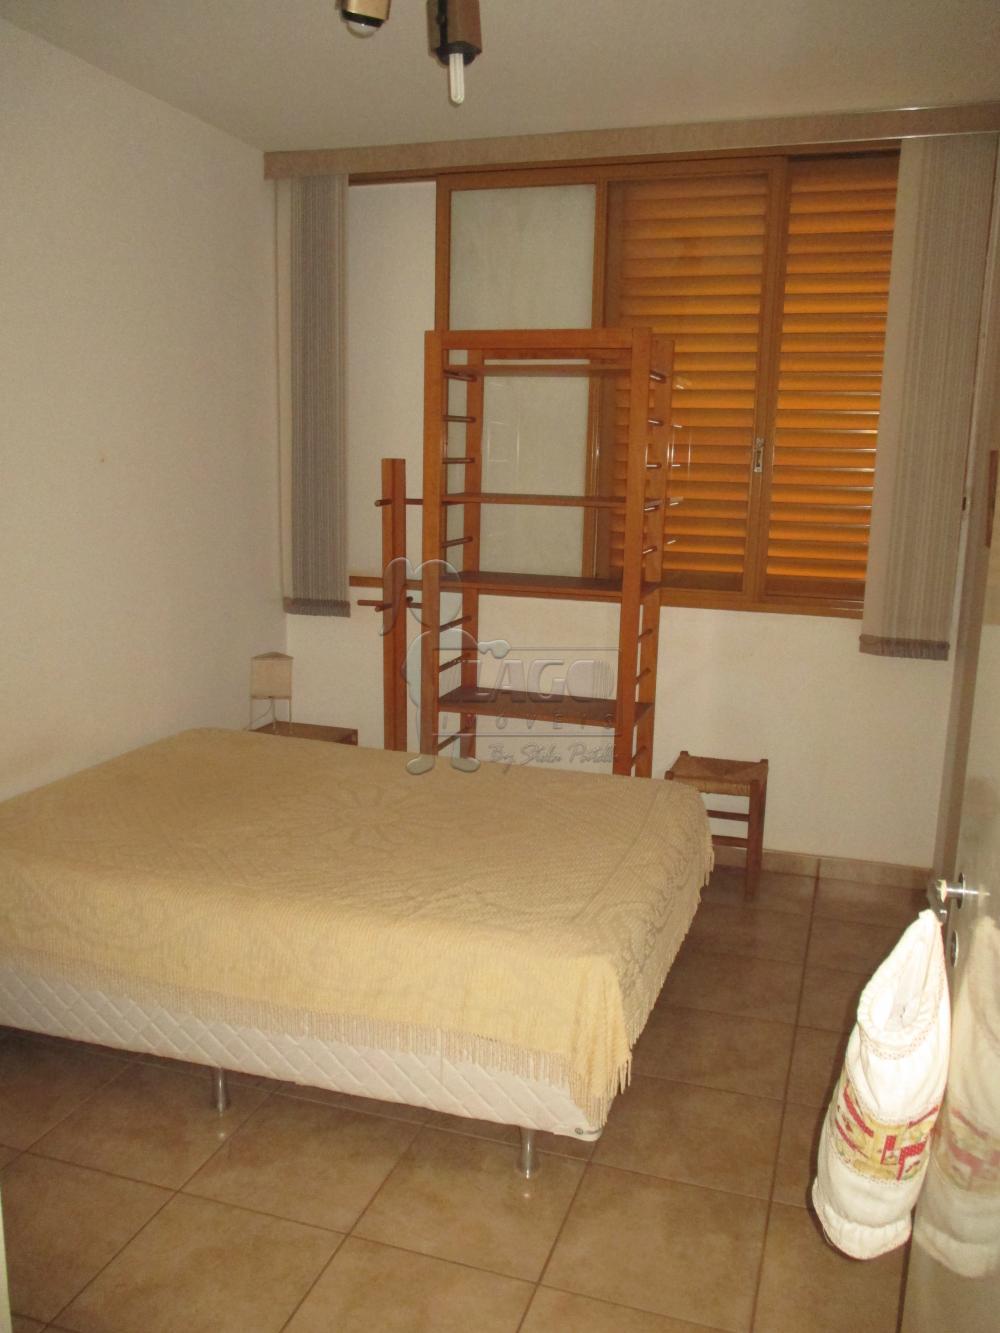 Alugar Apartamentos / Studio/Kitnet em Ribeirão Preto R$ 800,00 - Foto 5